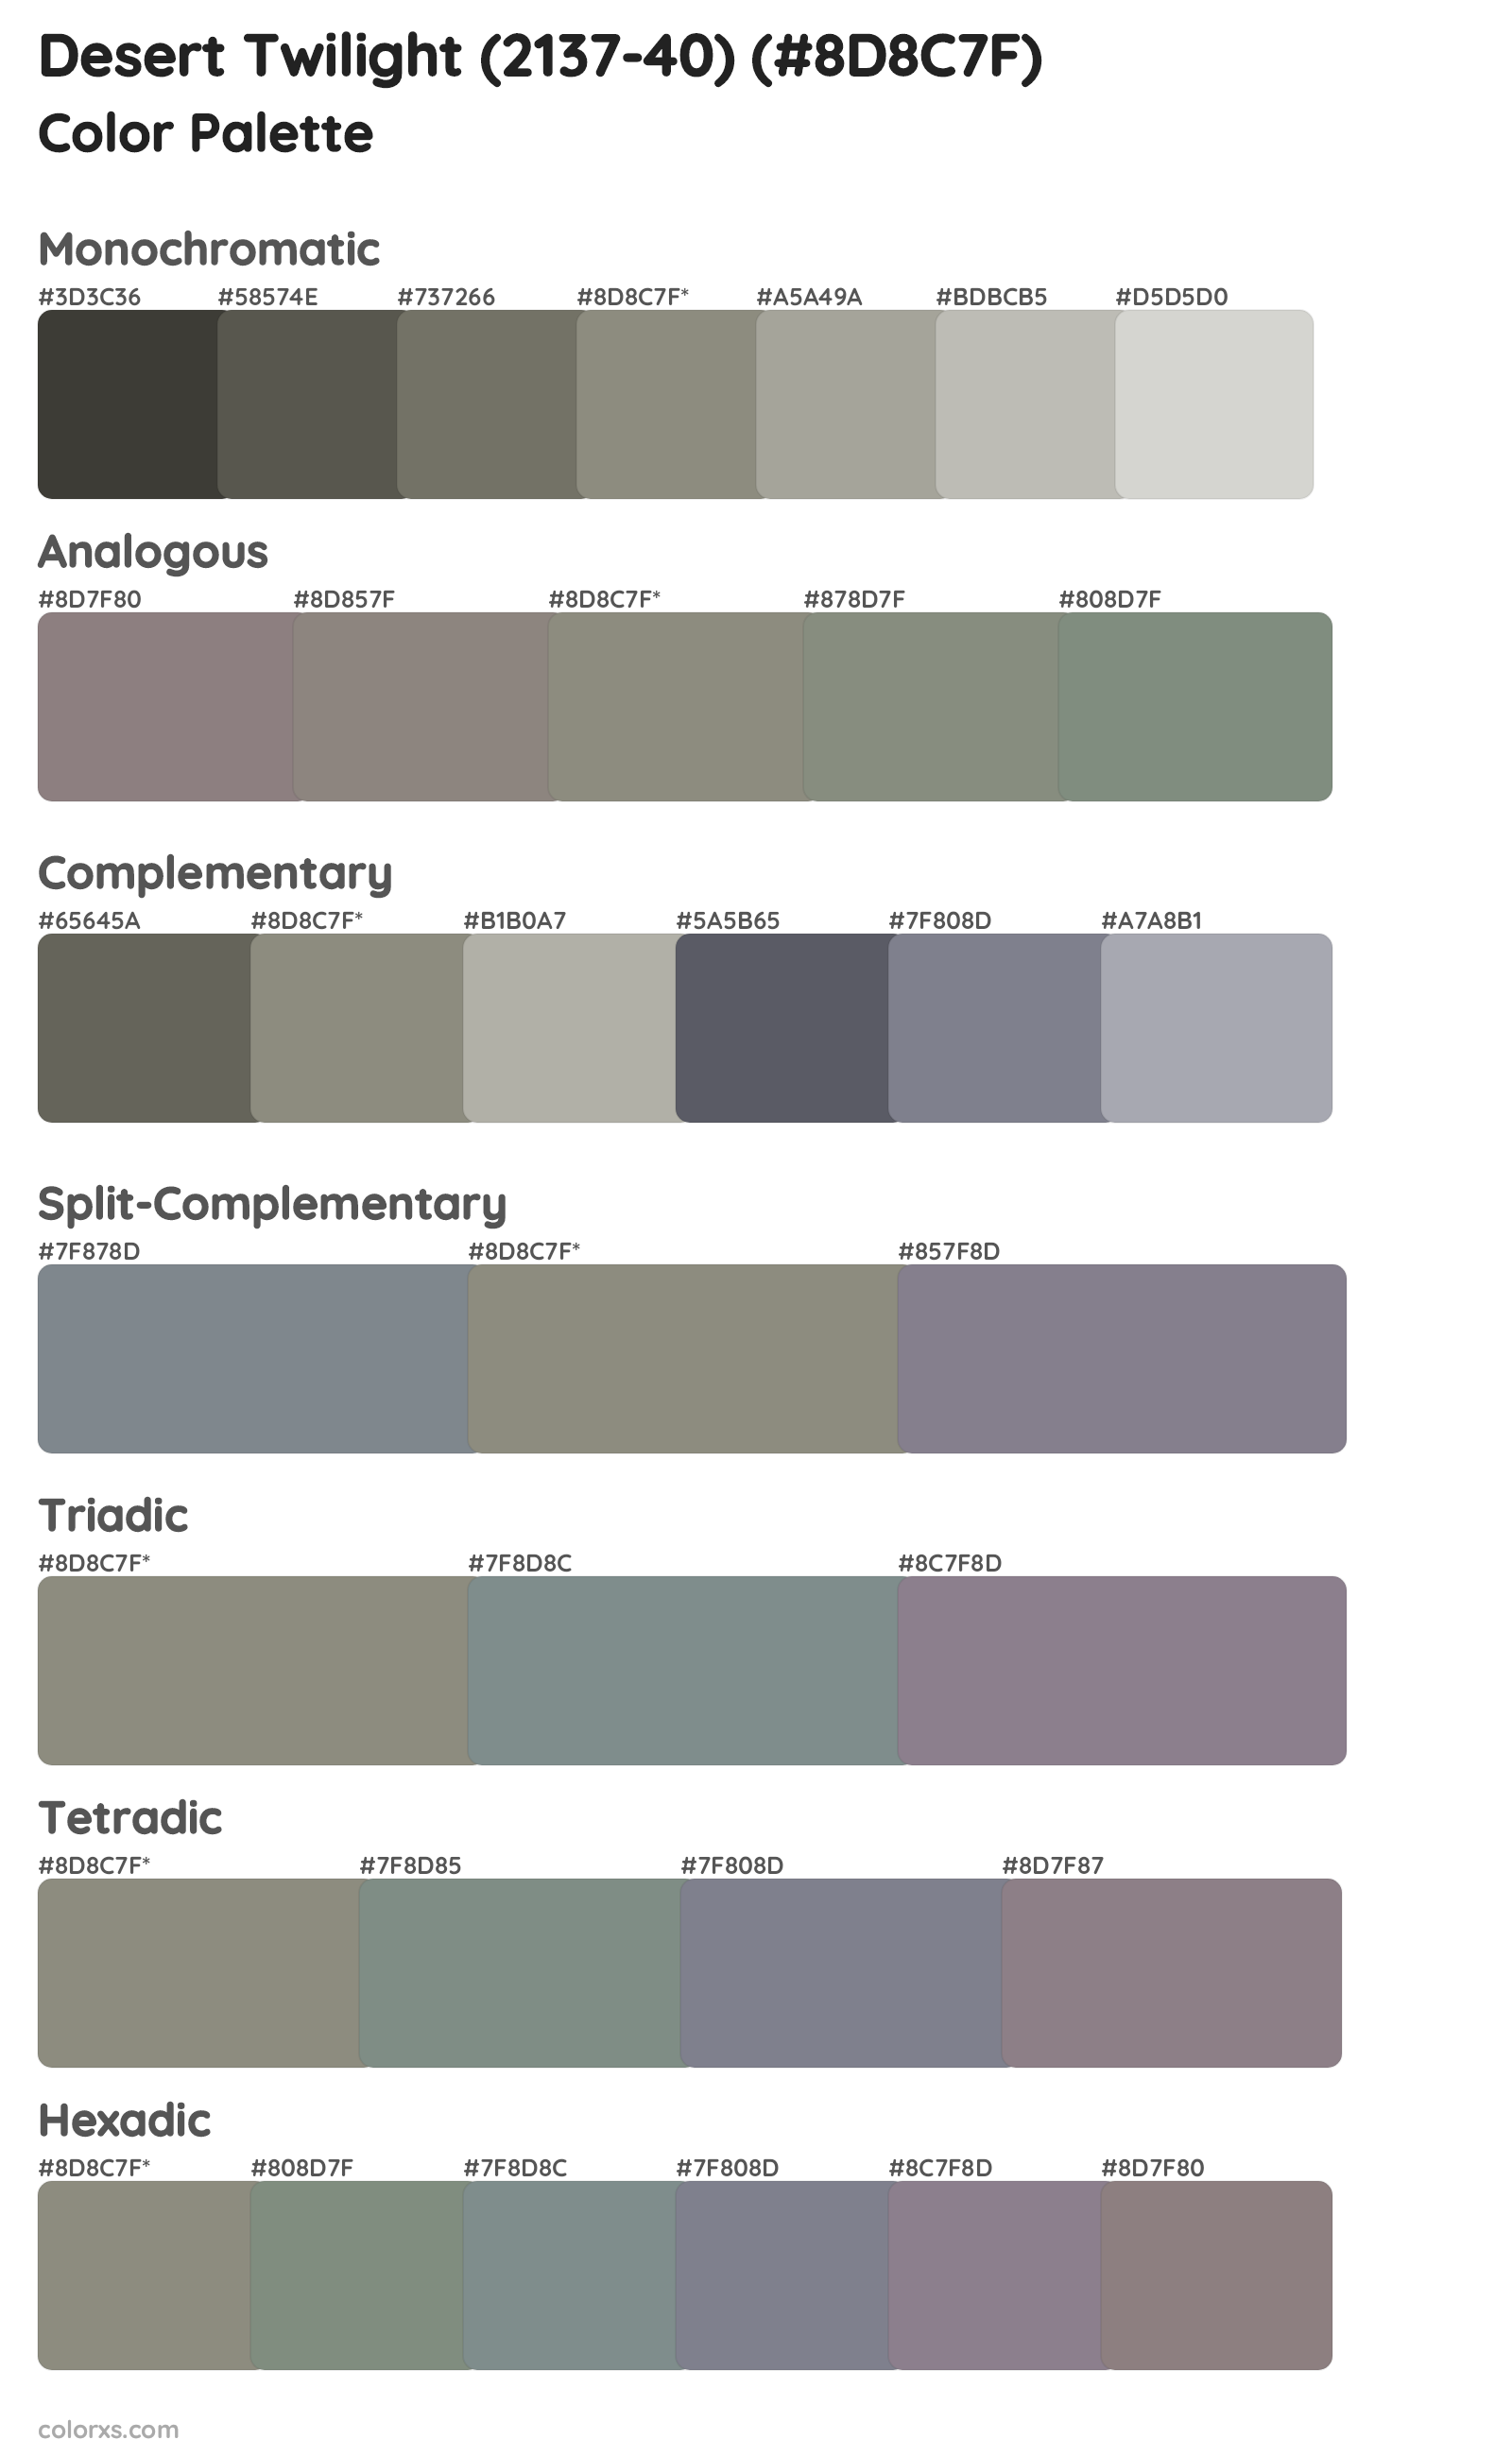 Desert Twilight (2137-40) Color Scheme Palettes